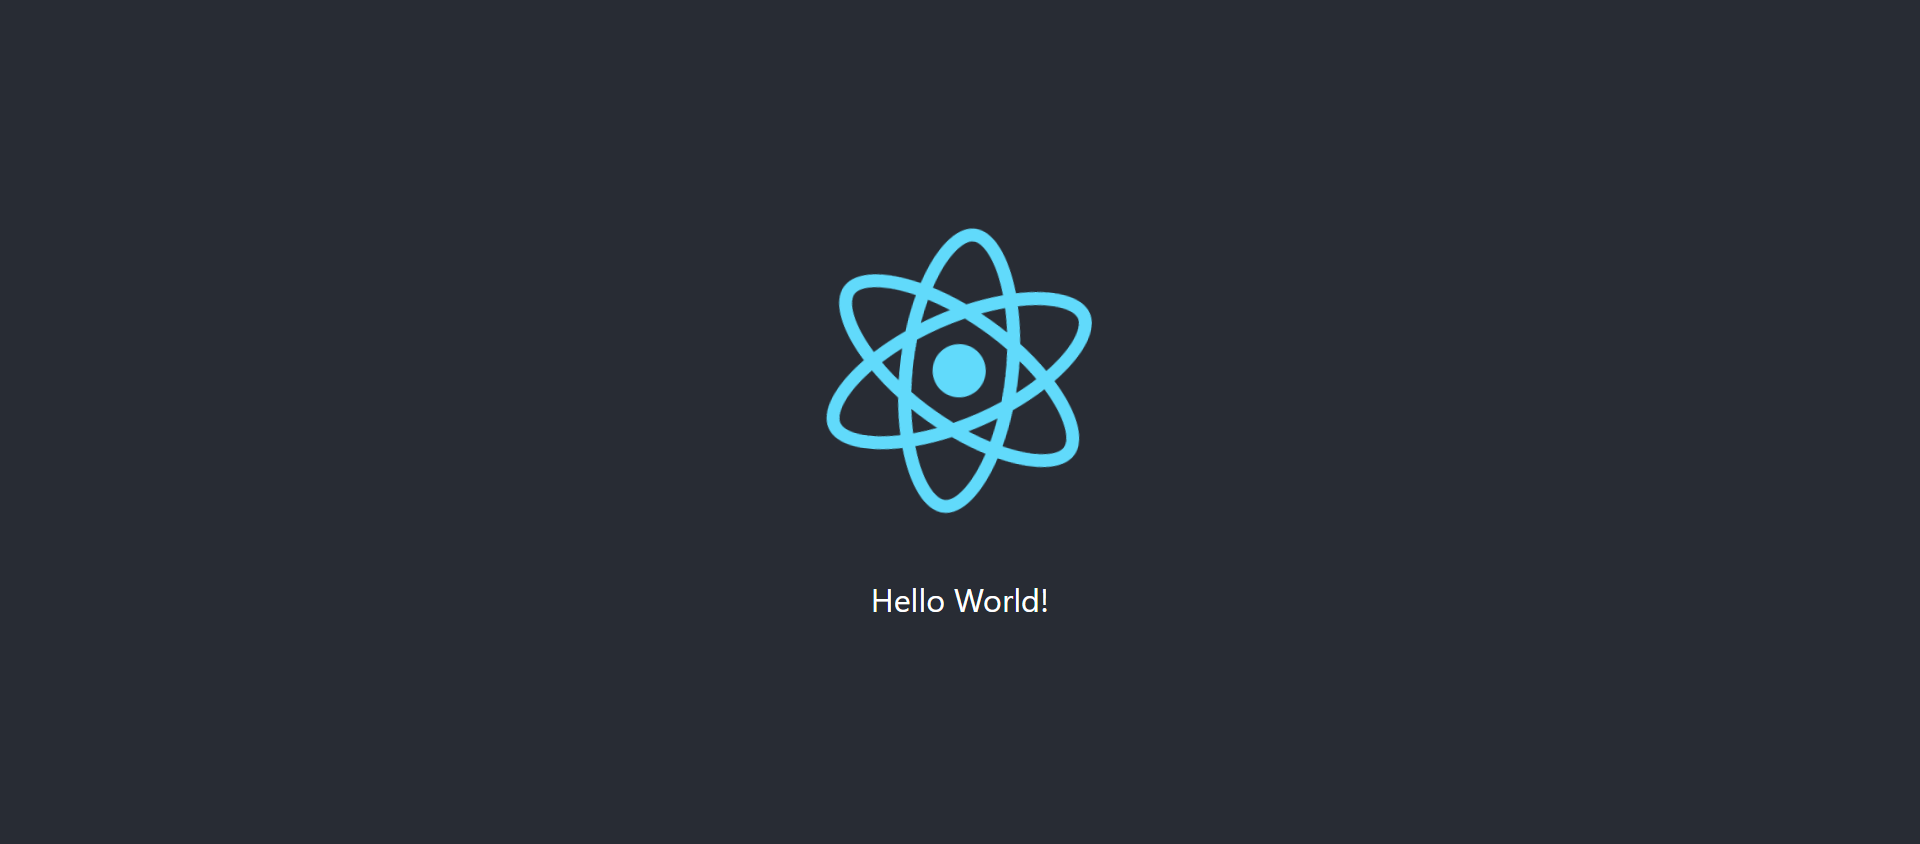 hello world reactjs - Come creare la tua prima app React con JavaScript